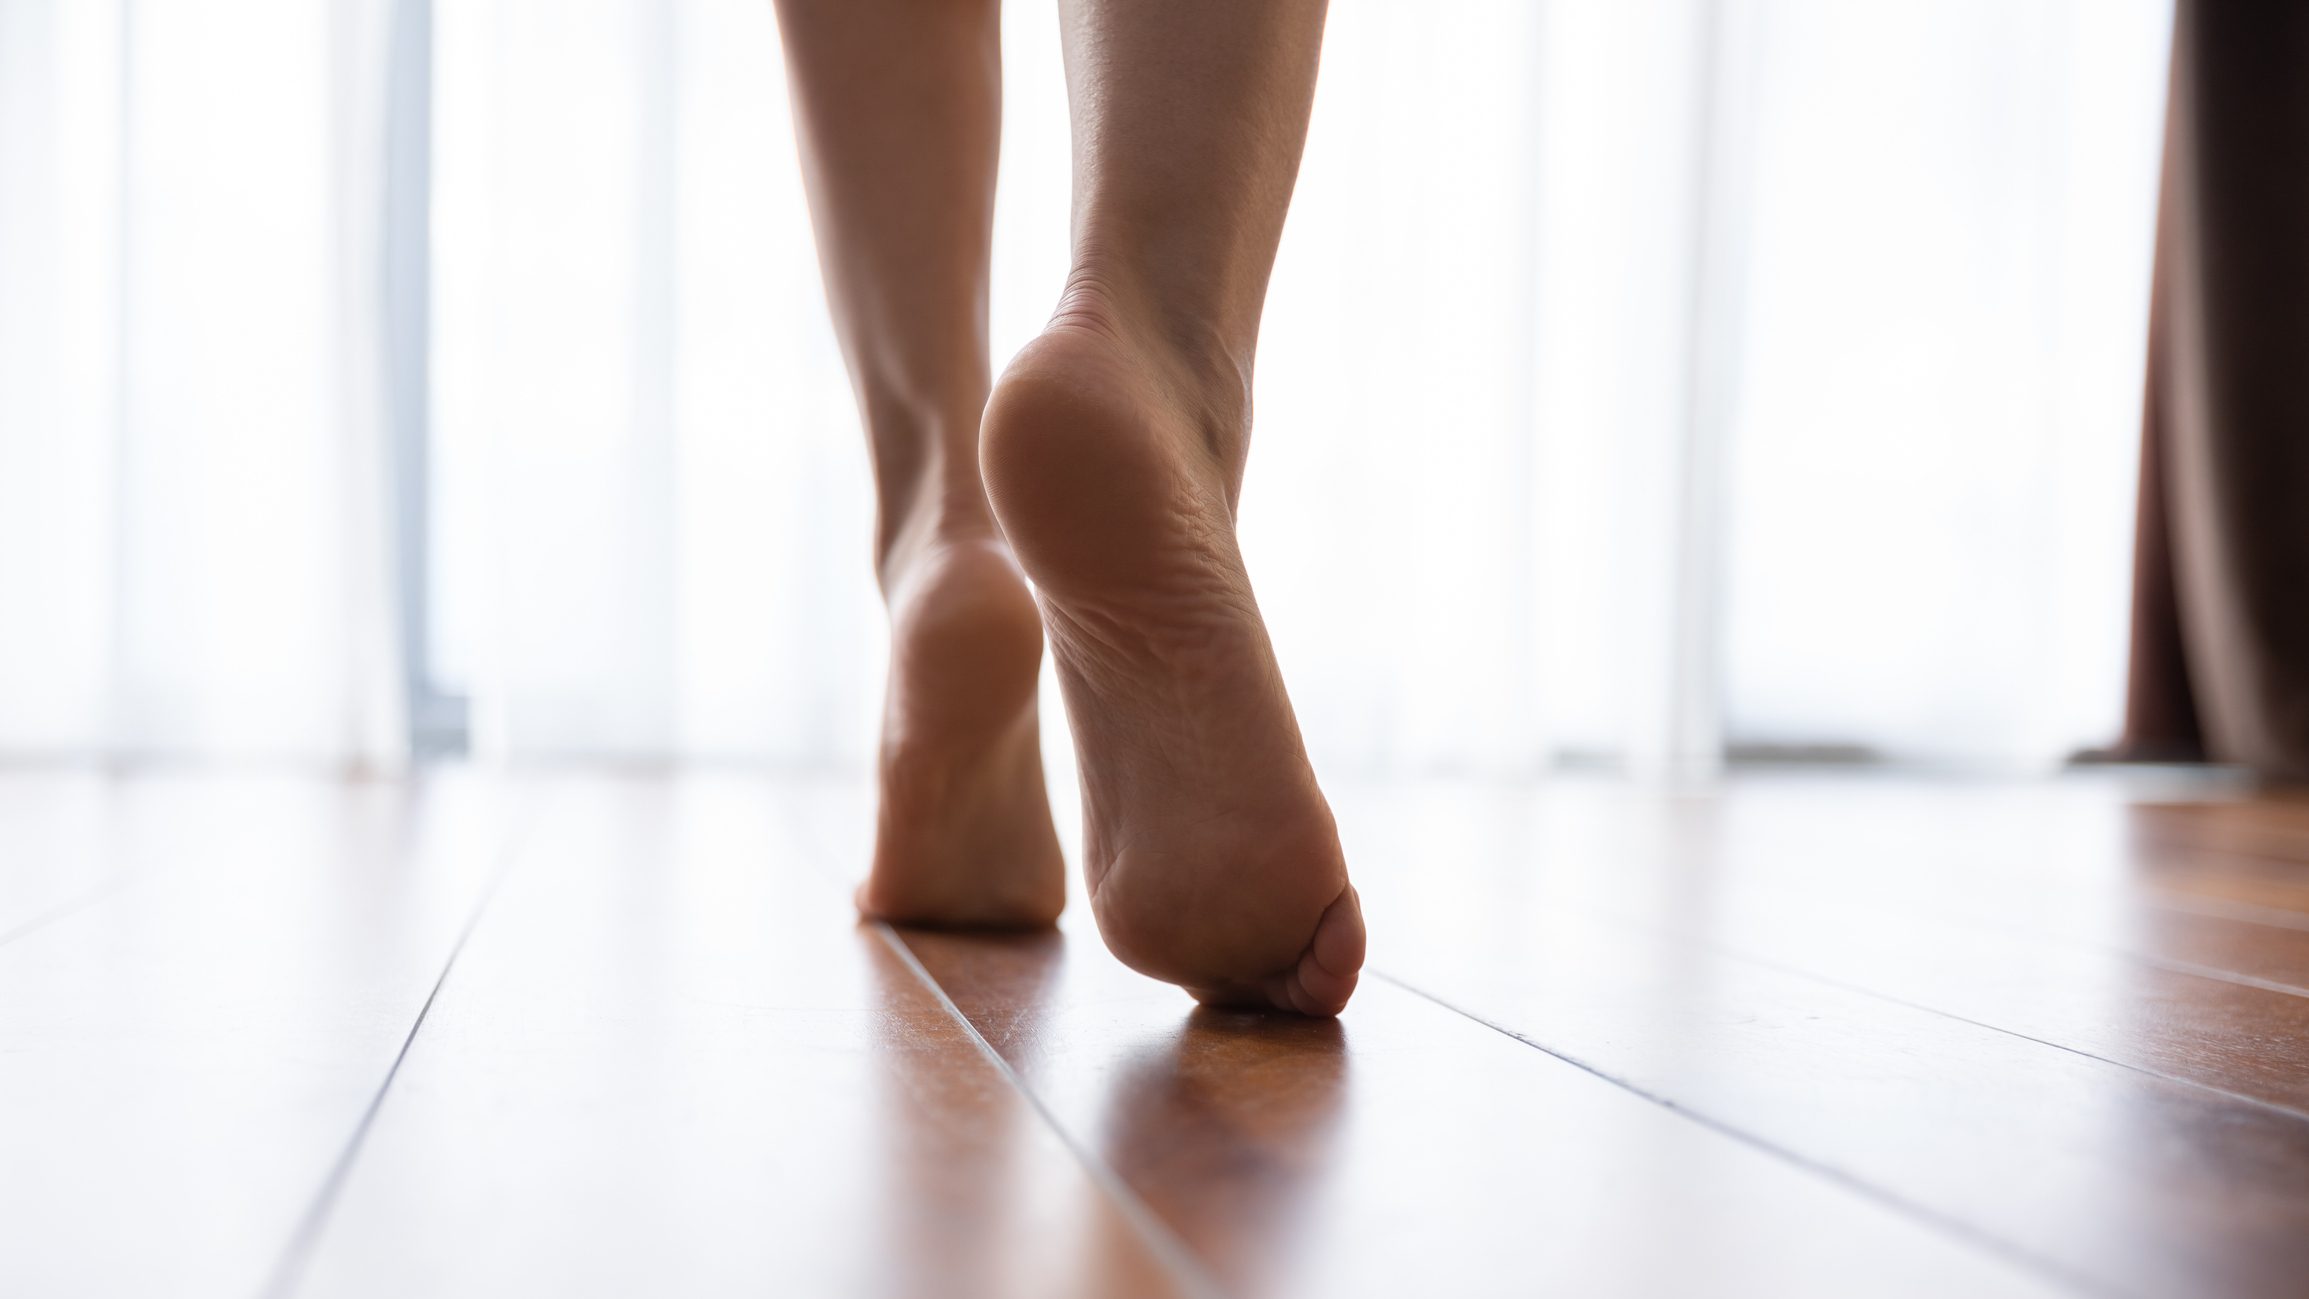 nærbilde av kvinnens føtter vandre i hjemmet's feet walking in home